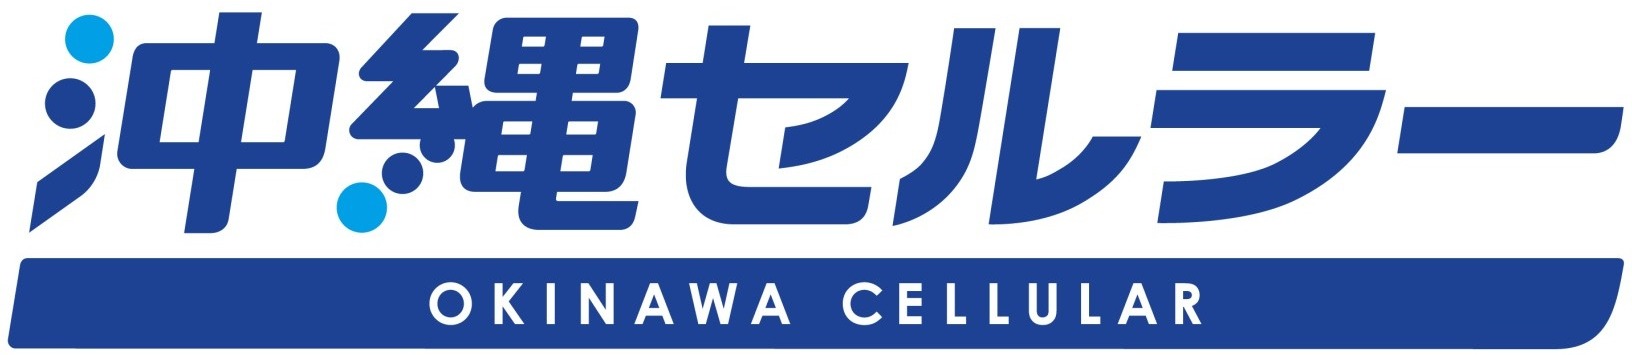 沖縄セルラー電話株式会社